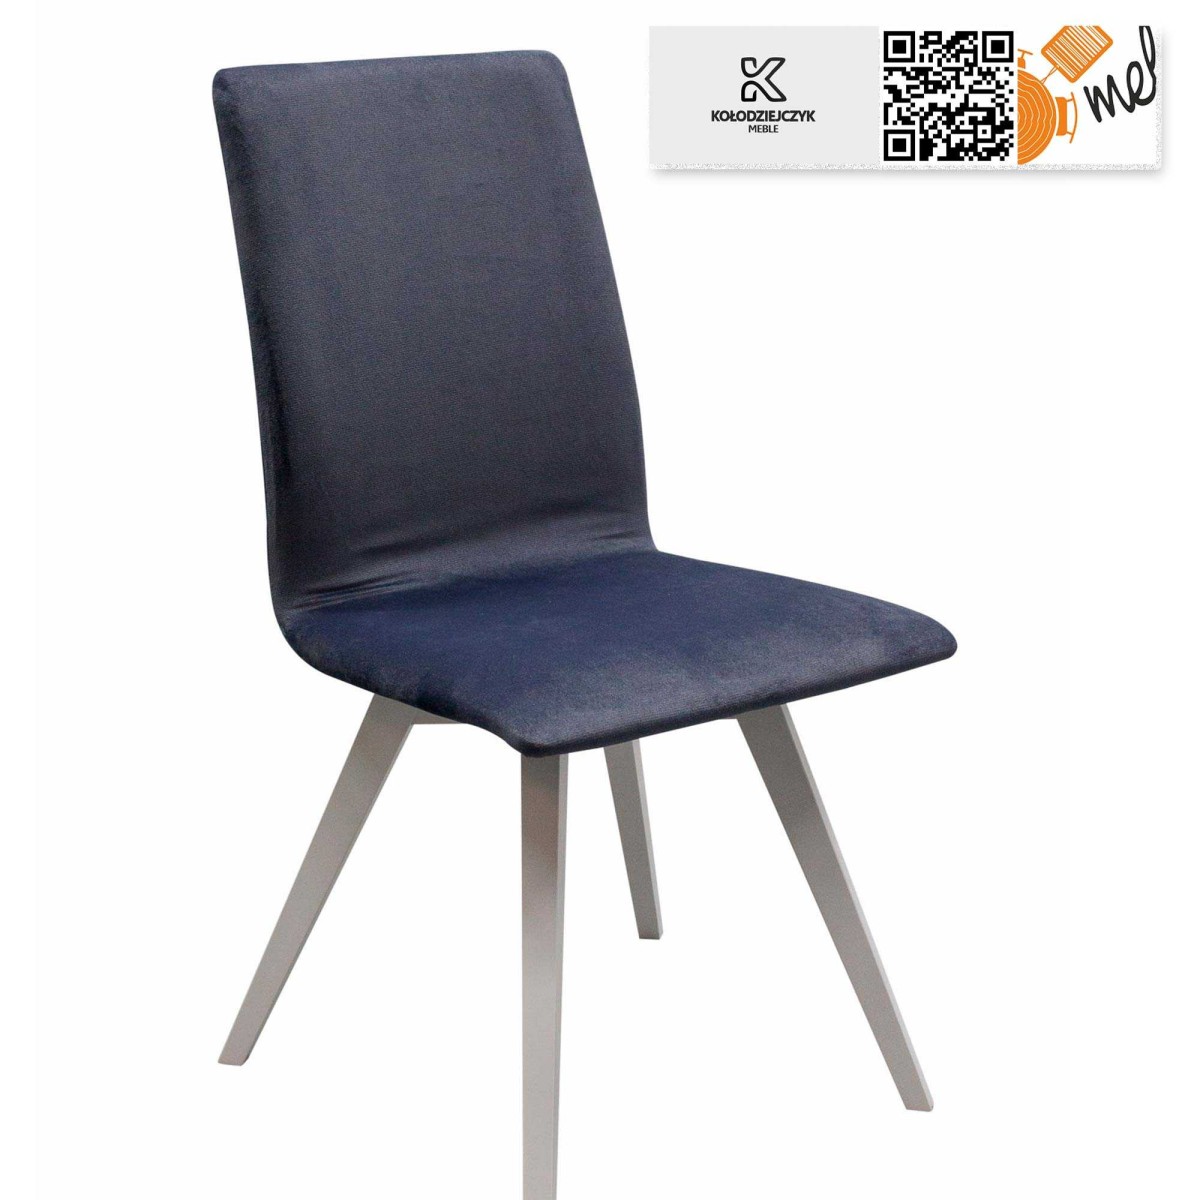 Krzesło drewniane tapicerowane K121 szare na białych nogach